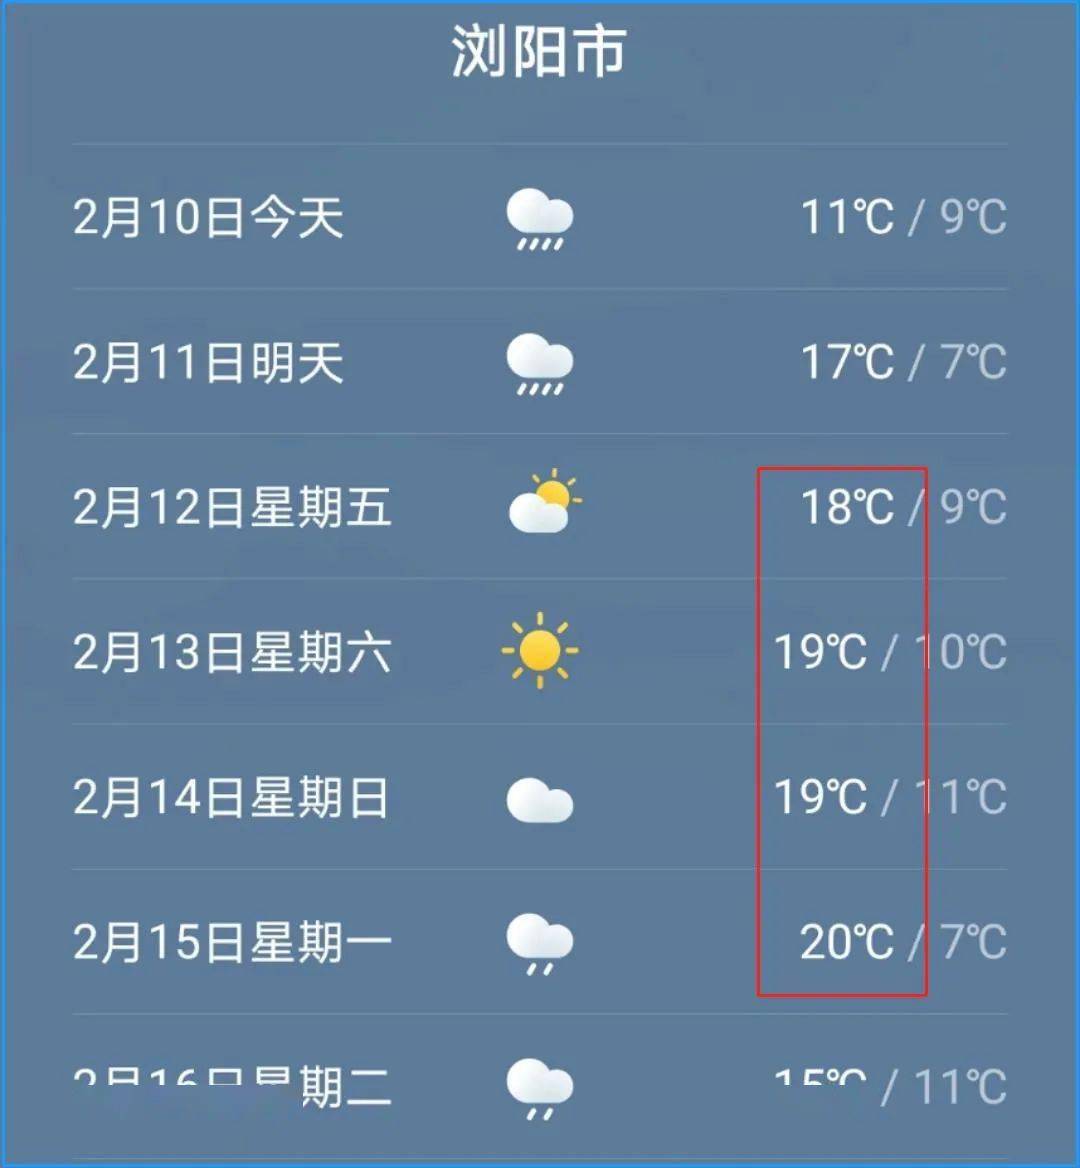 浏阳市气象局10日上午11点15分发布的春节天气预报显示: 11日(除夕)